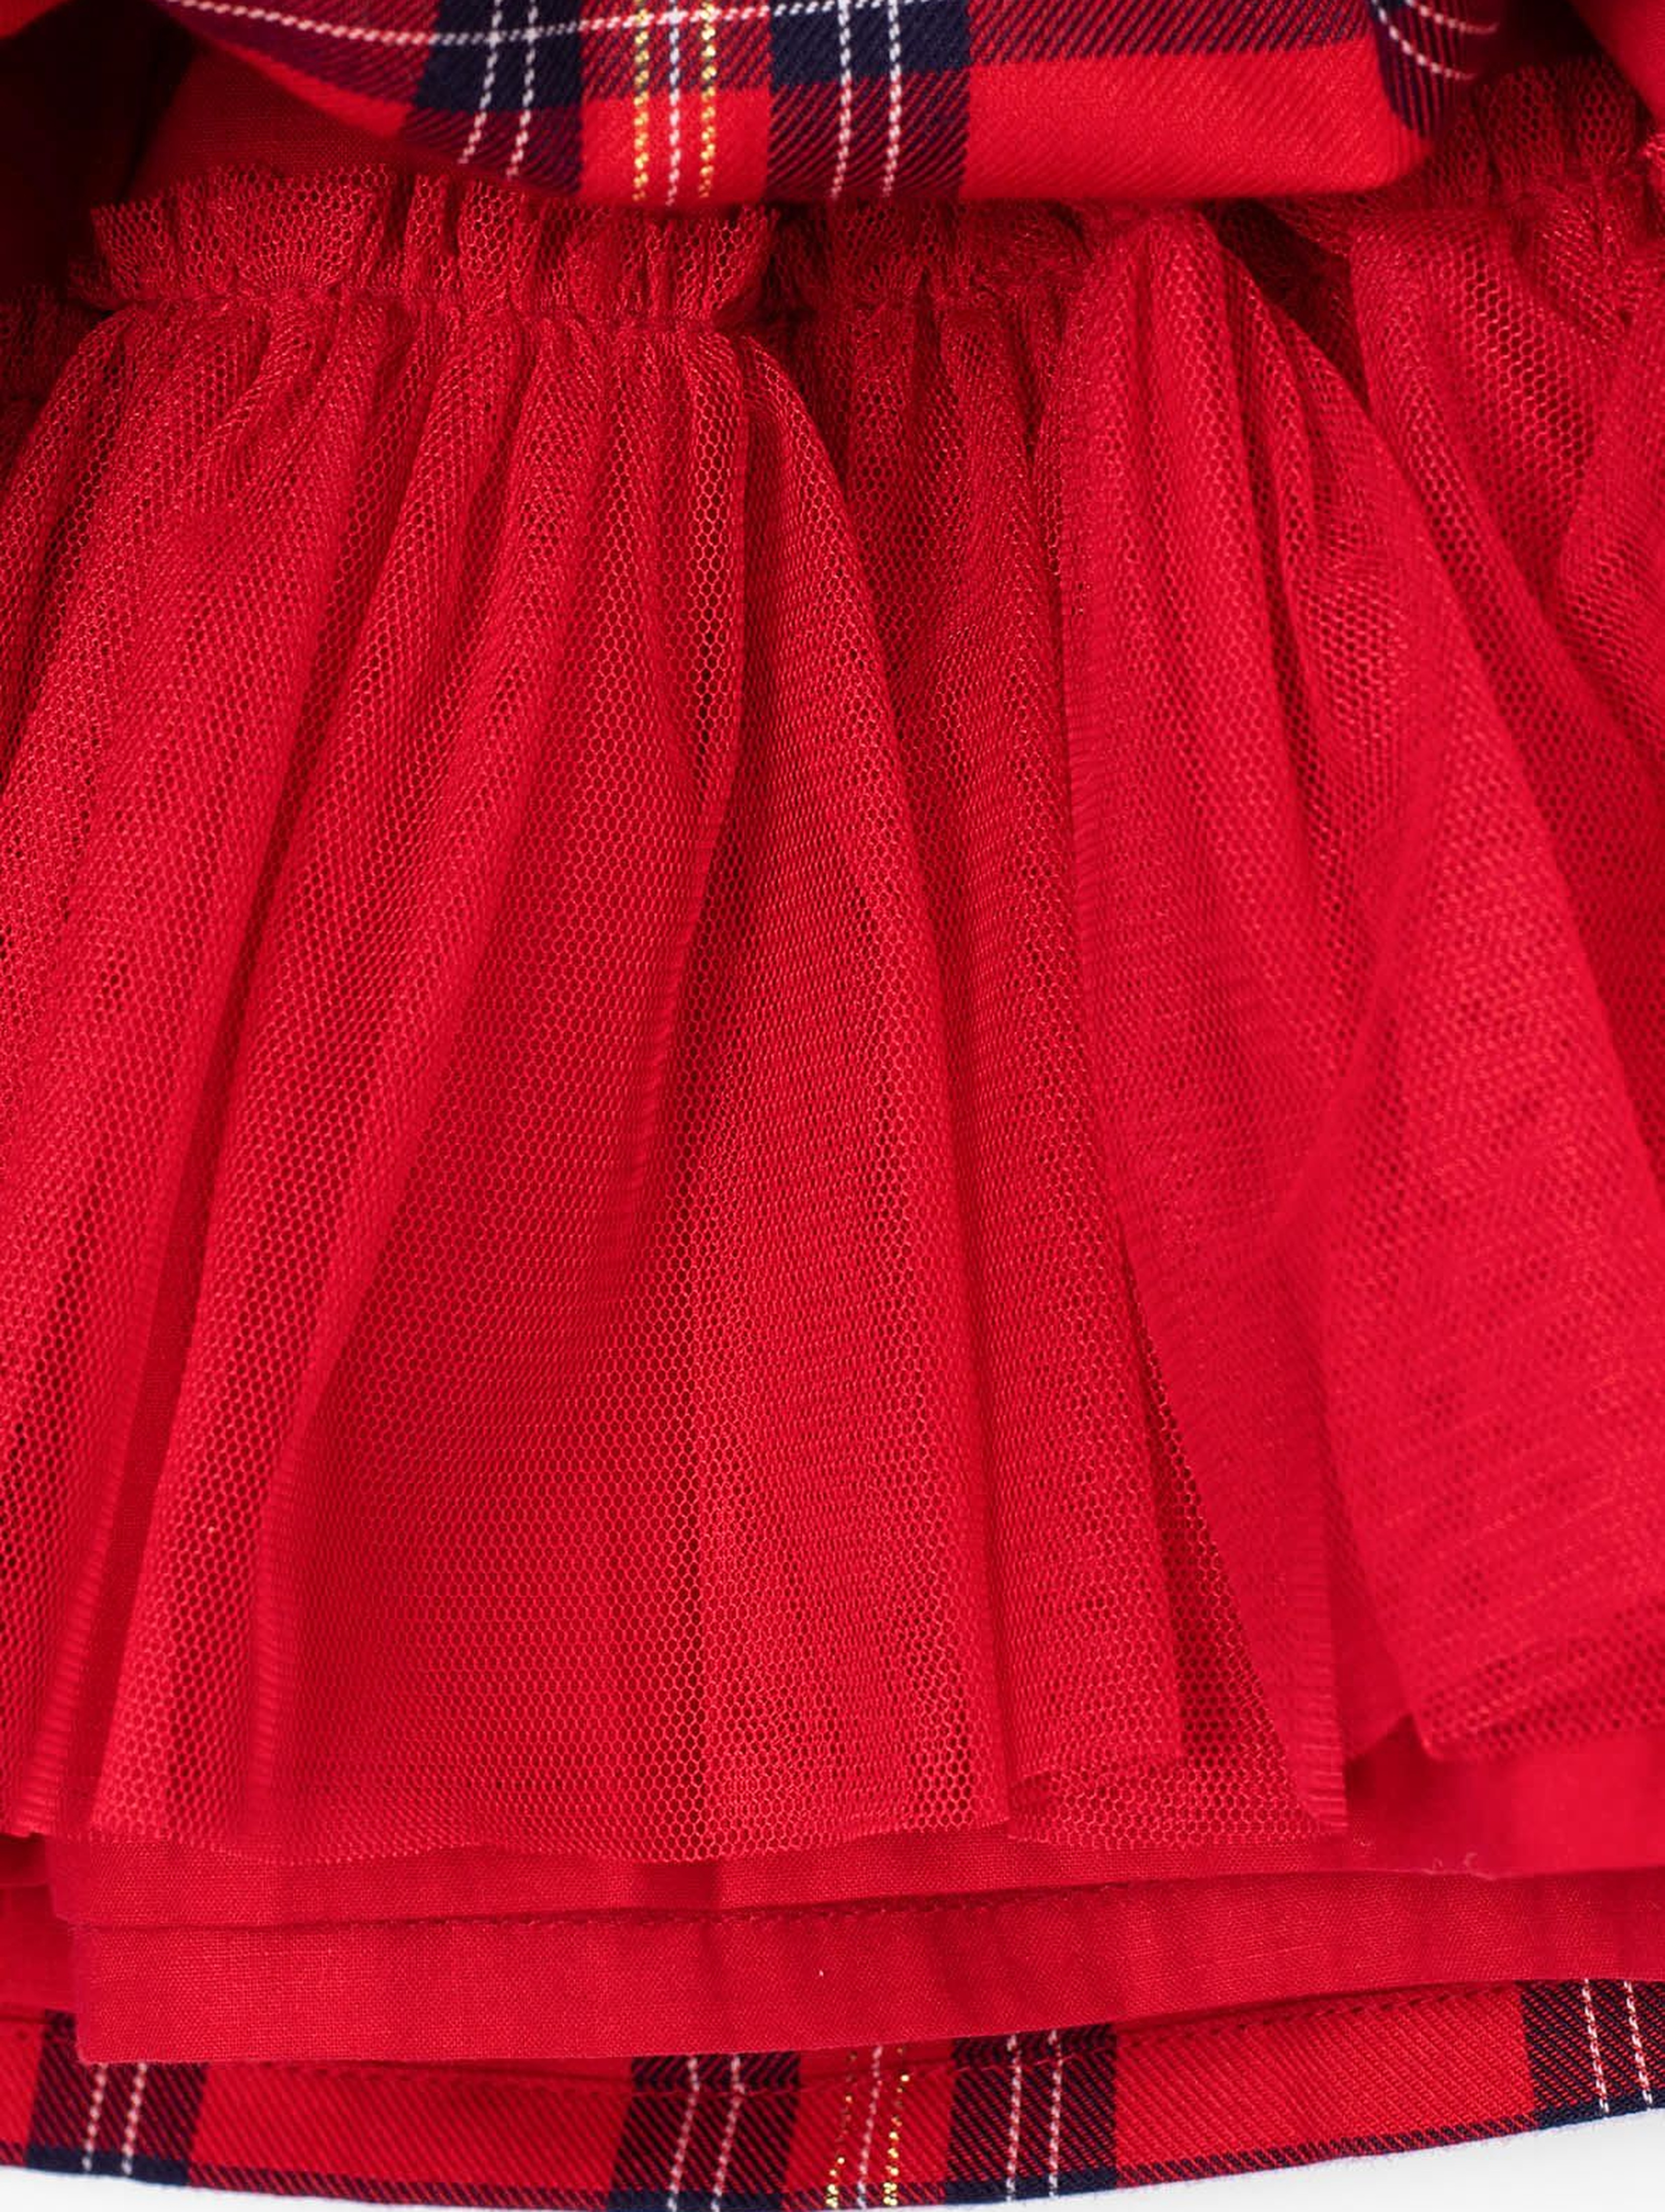 Czerwona spódnica w kratkę- kolekcja świąteczna